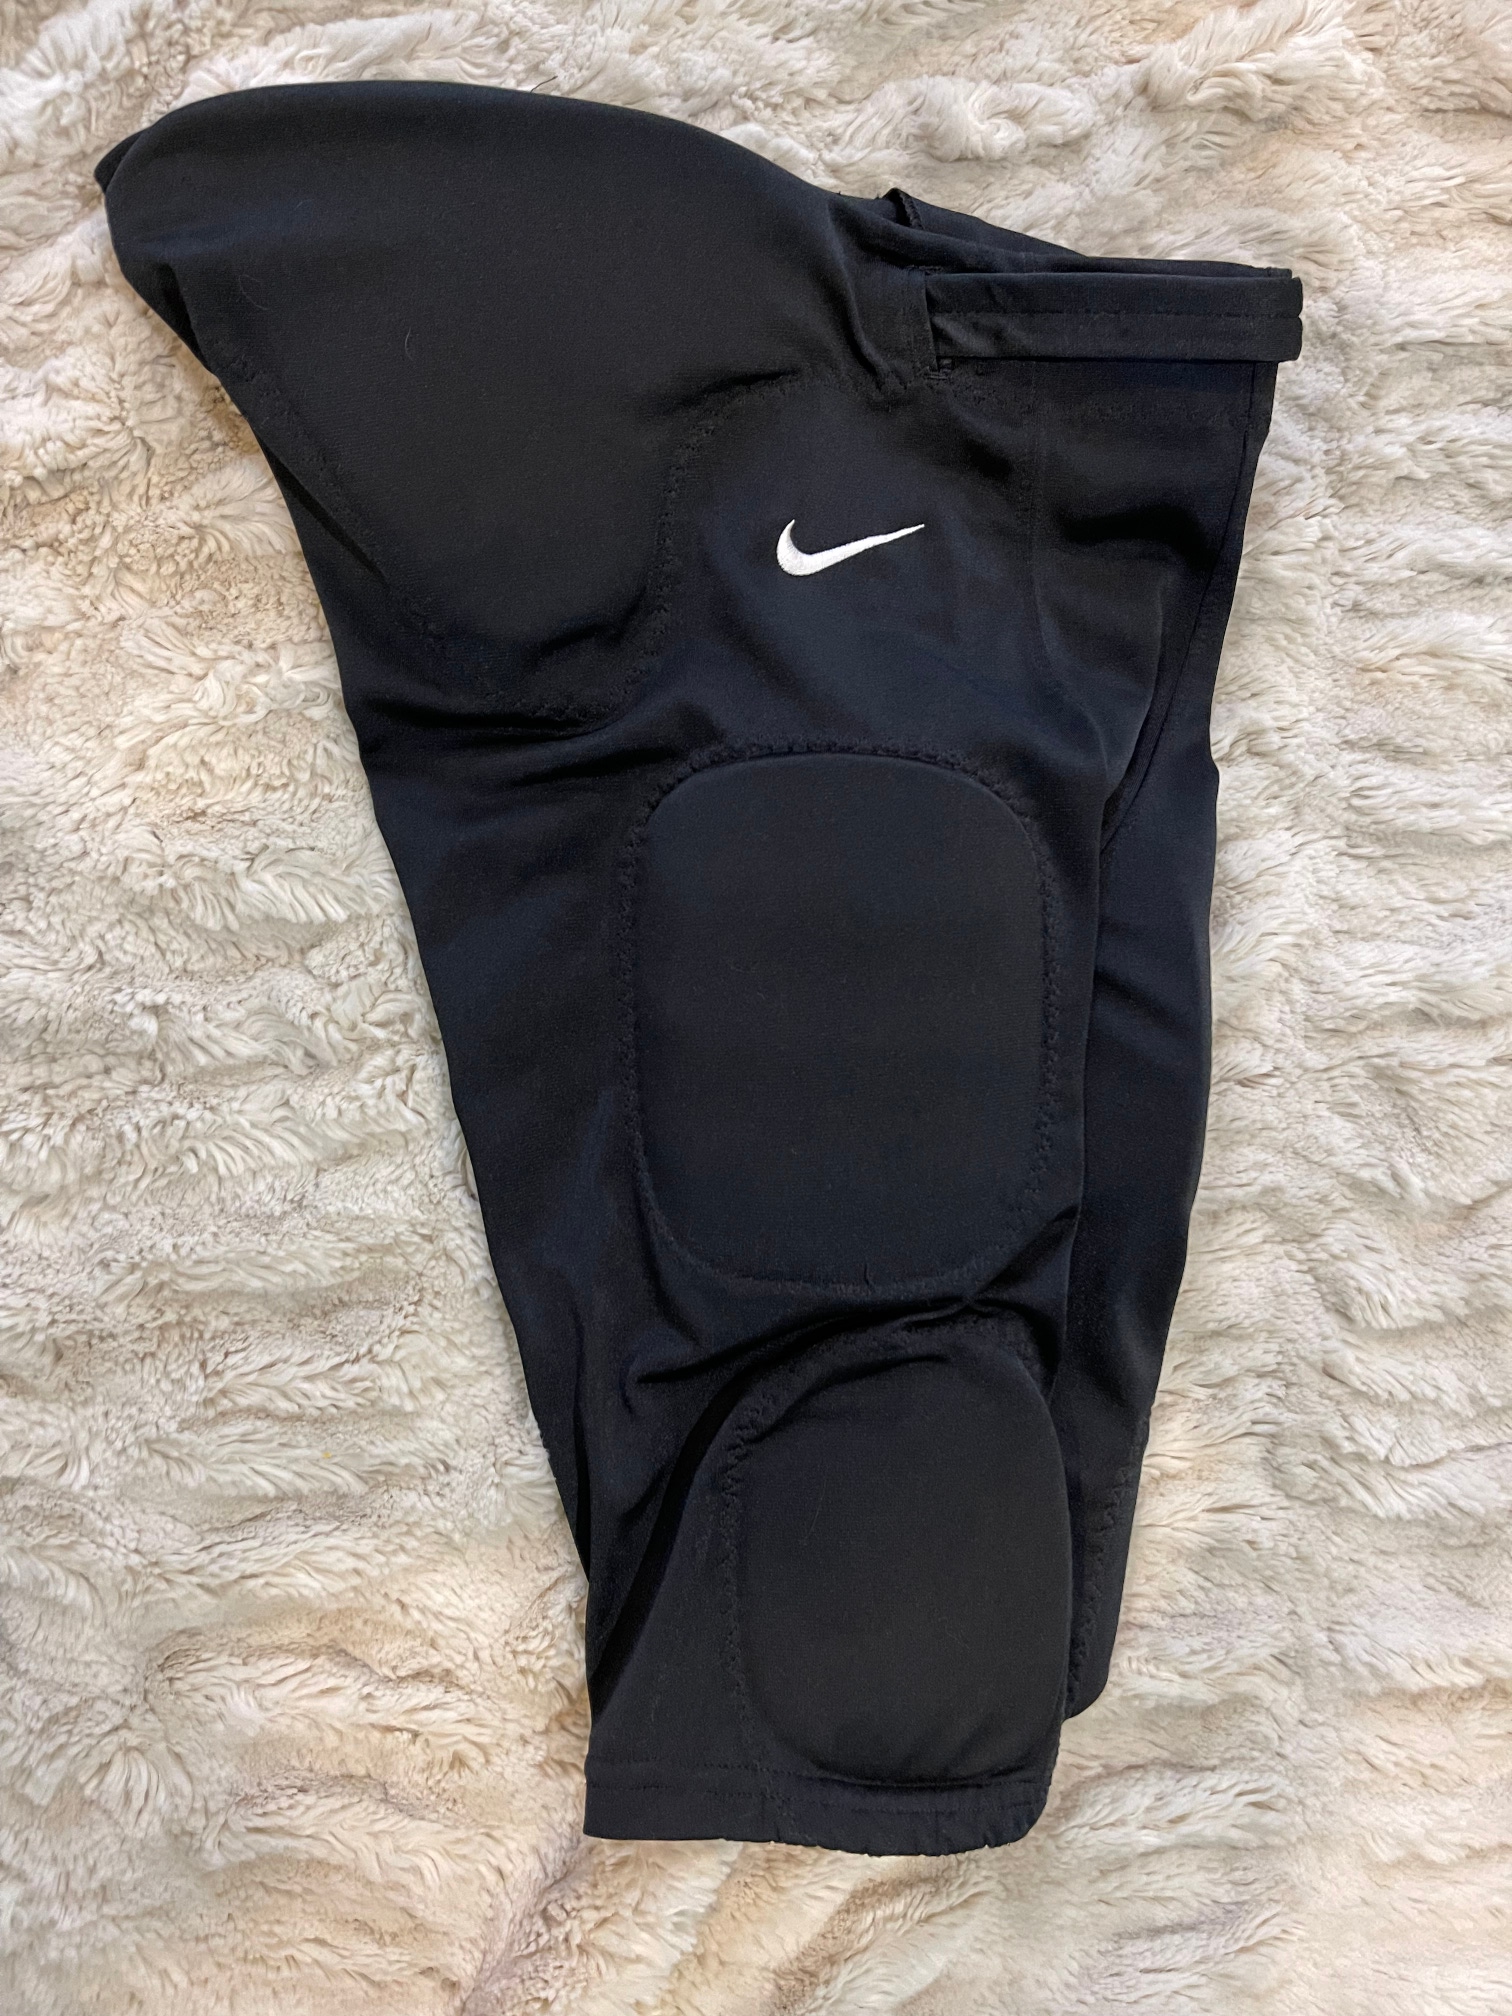 Nike Padded Football Pants YM